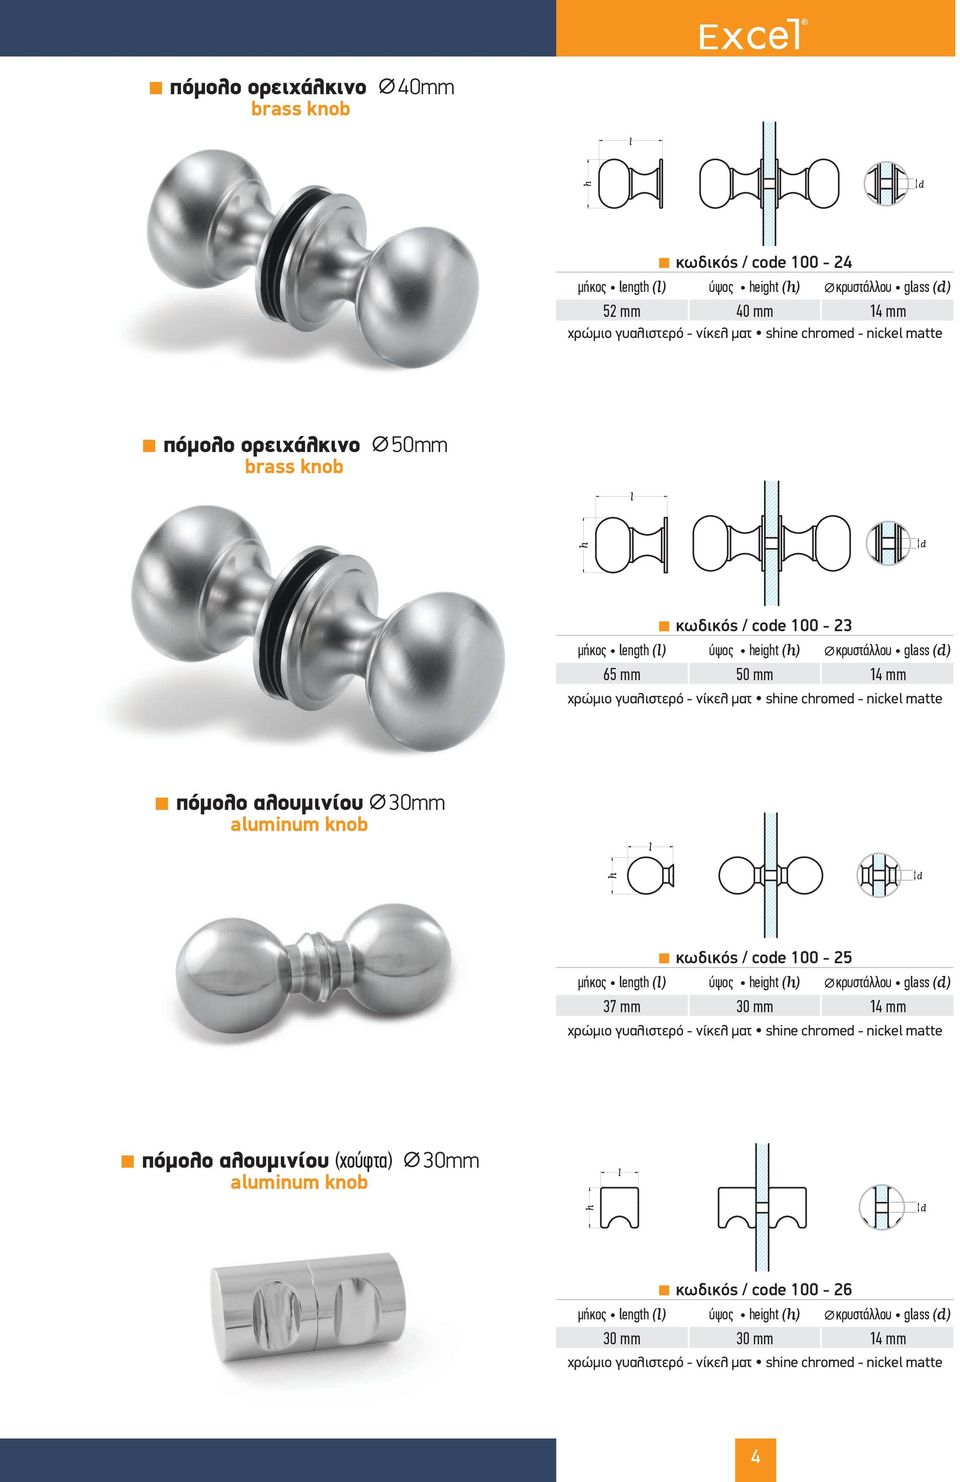 πόµολο αλουµινίου aluminum knob 30mm κωδικός / code 100-25 height κρυστάλλου glass 37 mm 30 mm 14 mm